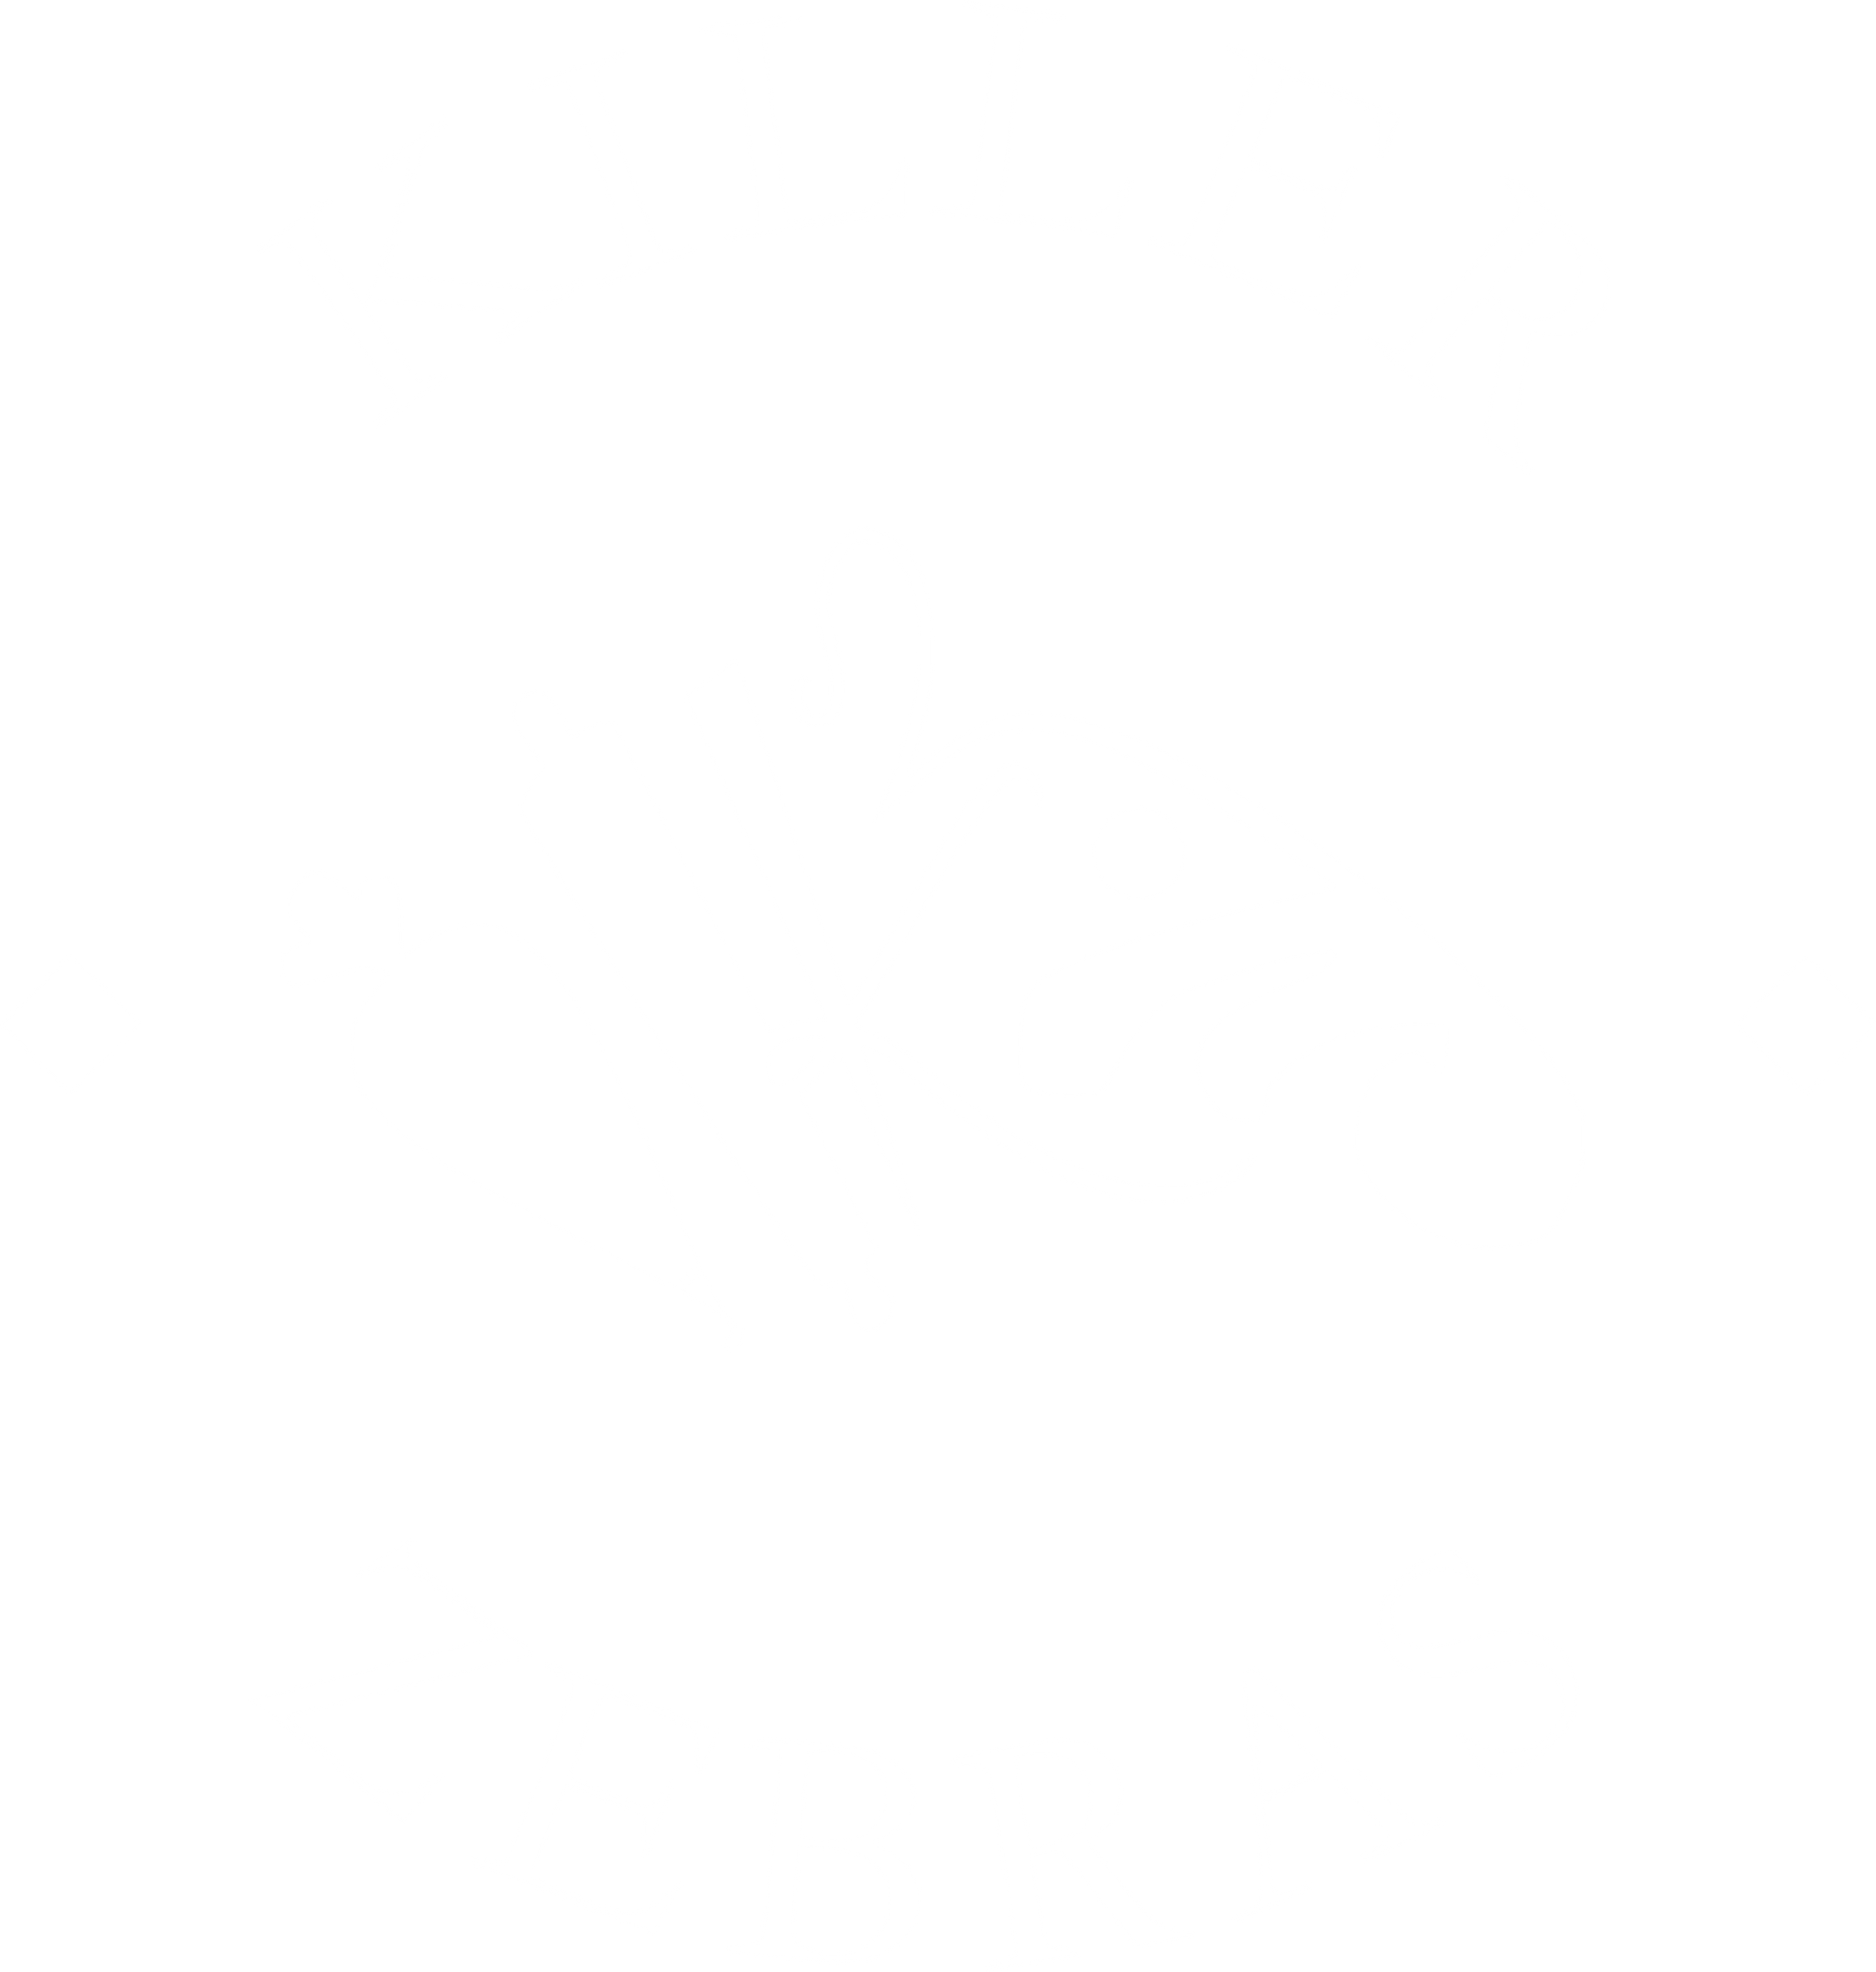 XTC Stencil Genie Side C - Killer Zebras